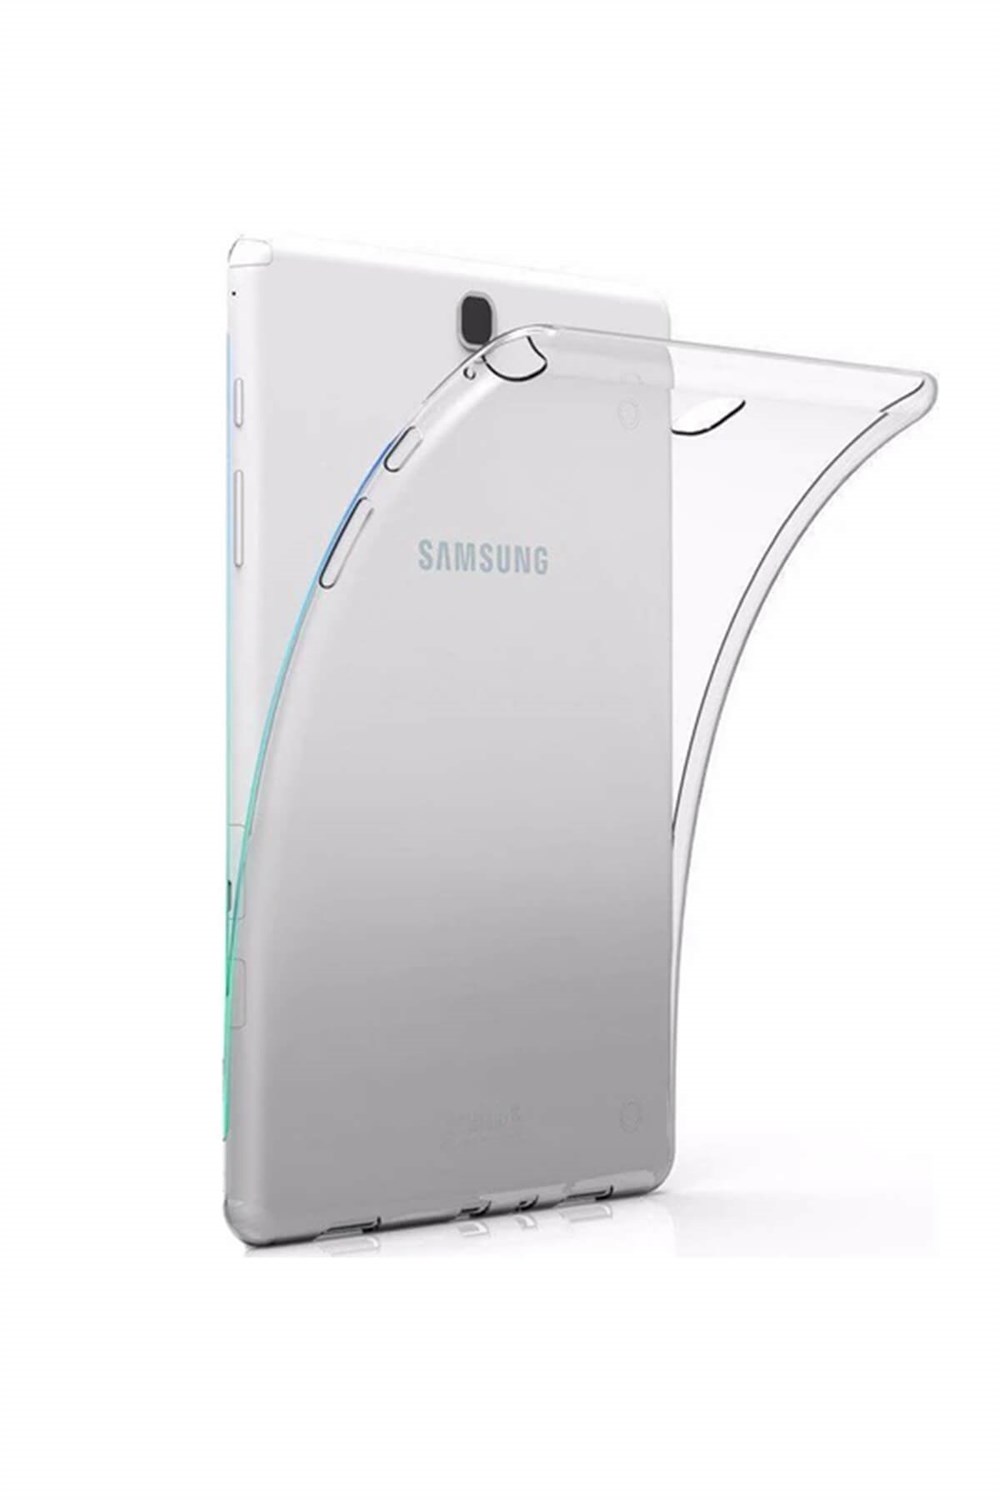 Samsung Galaxy Tab 3 Lite SM-T110 Silikon Tablet Kılıfı Seti (7 inç) I  Esepetim.com